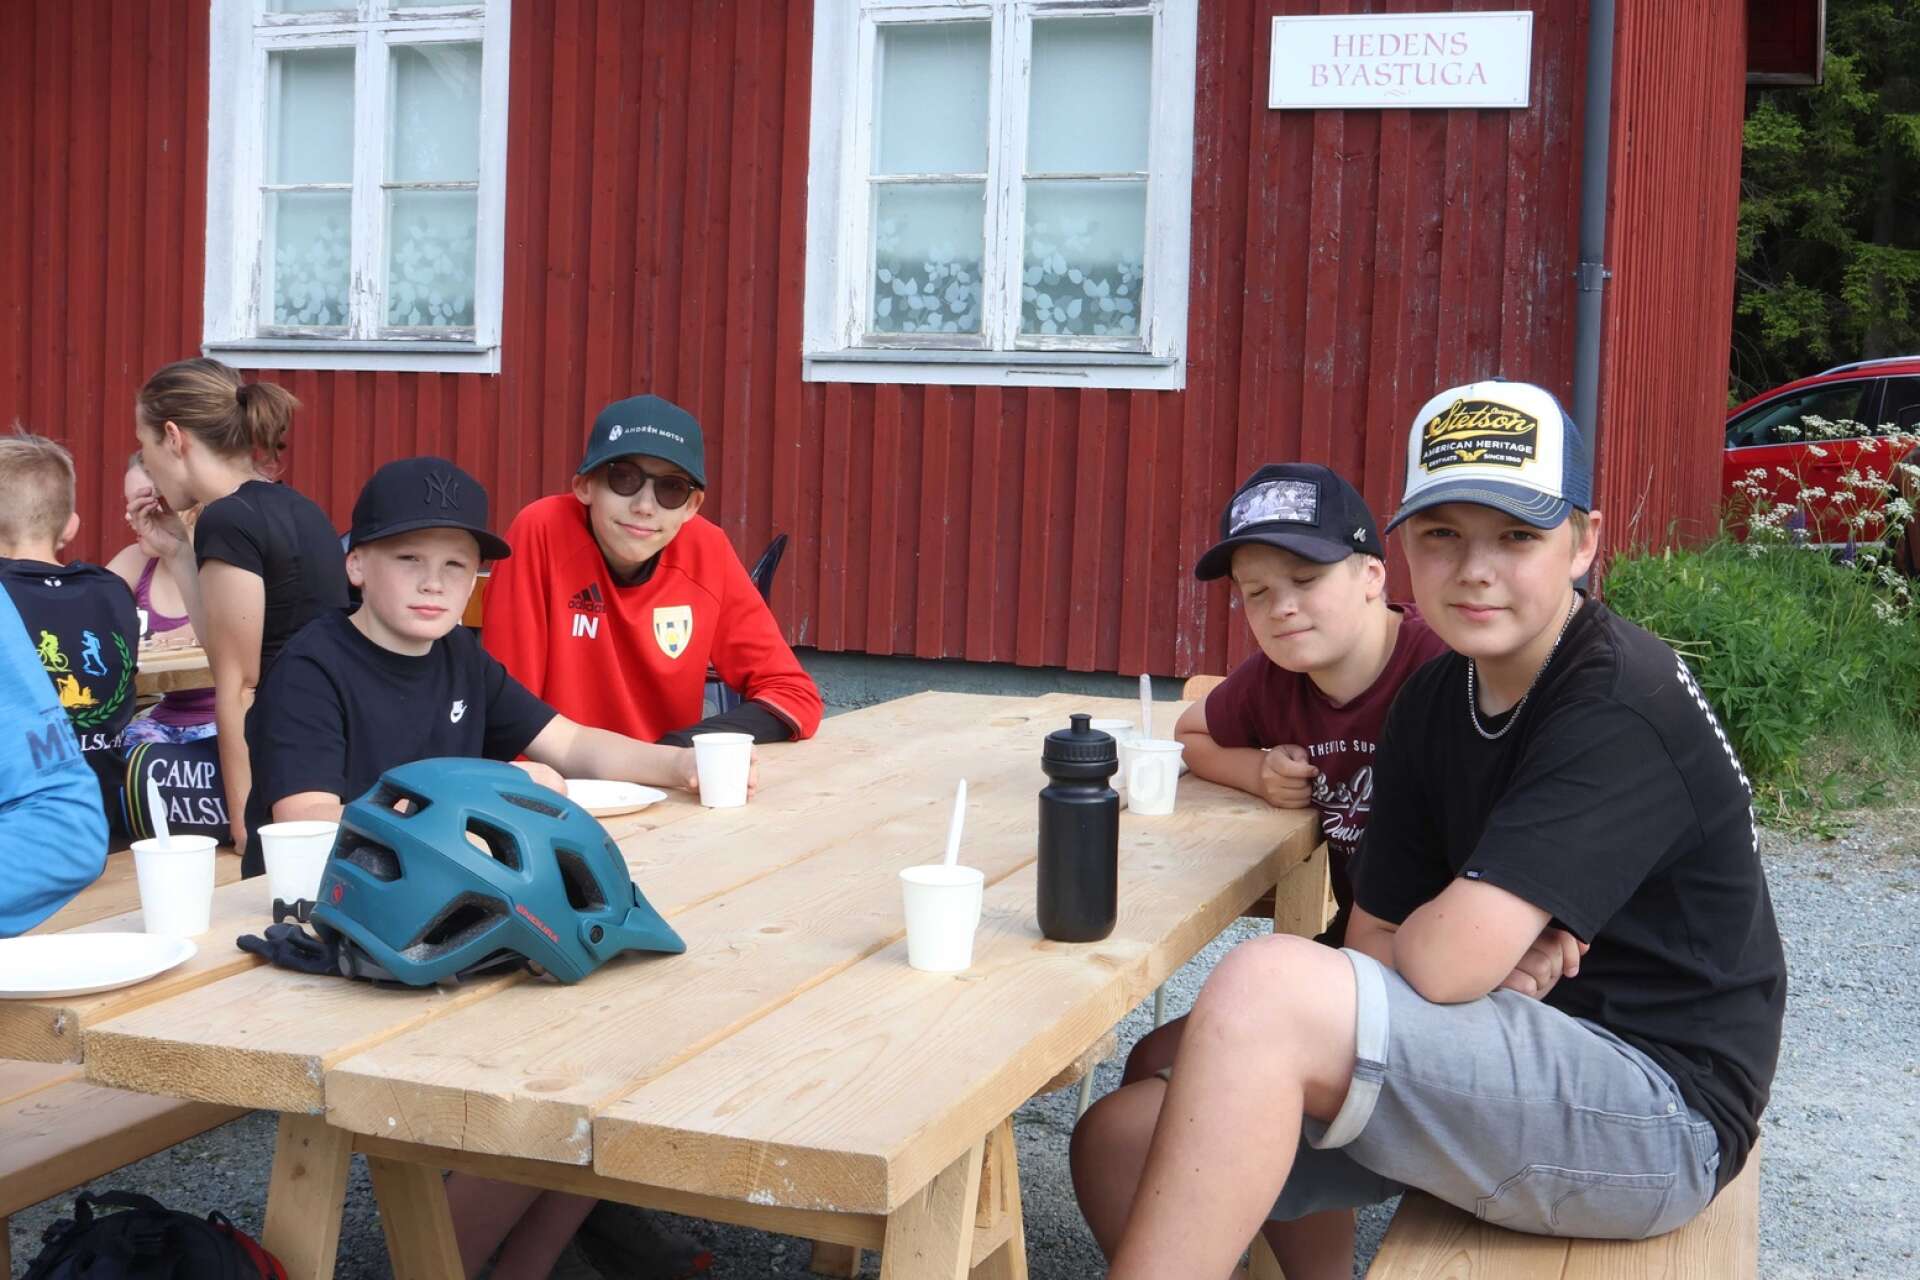 Charlie och Max Dagström, Ville Nilsson och Melker Halvorsson tog en paus och åt frukost vid Hedens bystuga.